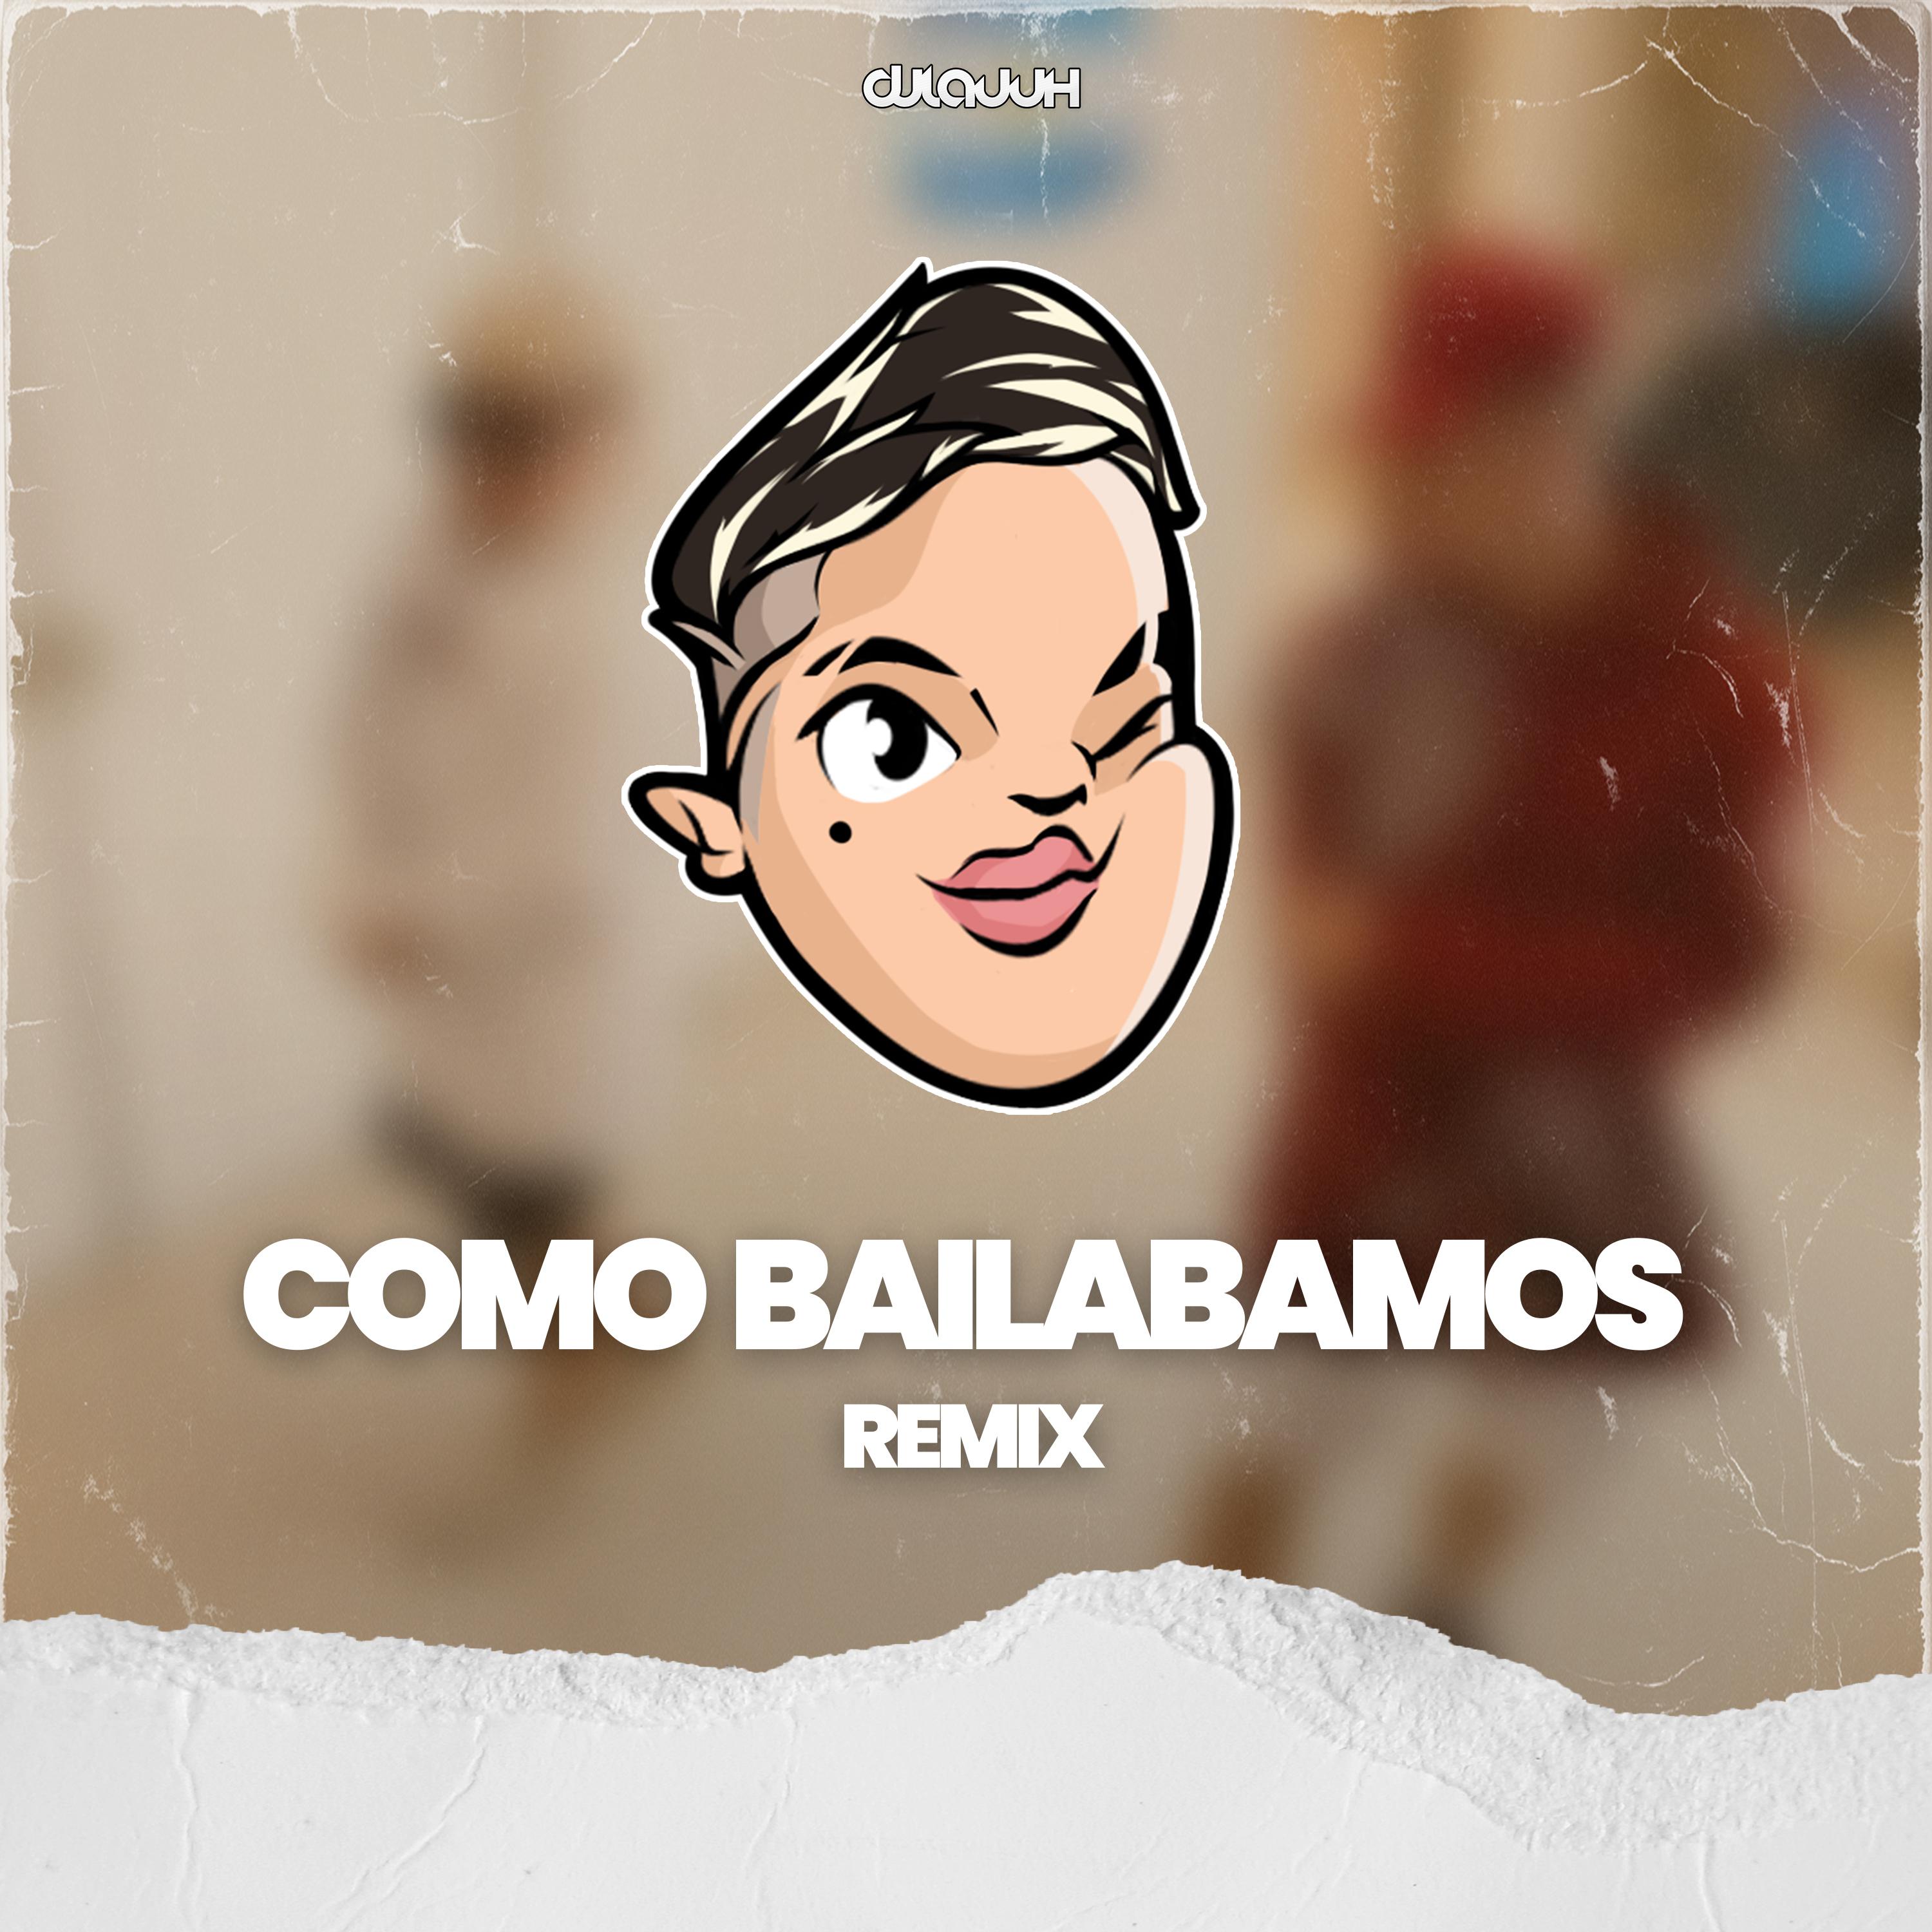 Dj Lauuh - Como Bailabamos (Remix)